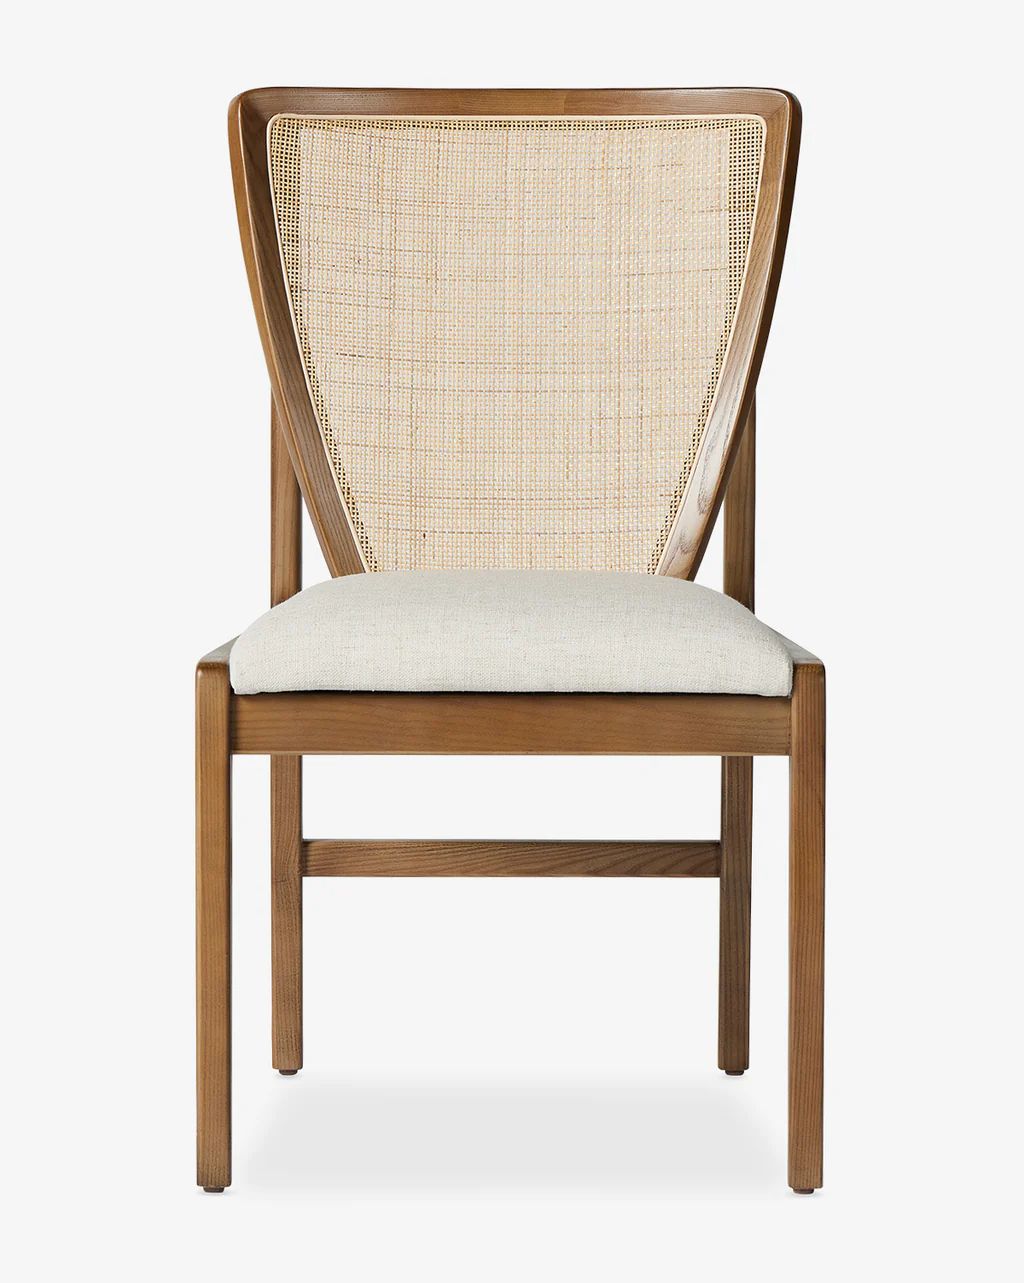 Rogan Chair | McGee & Co.